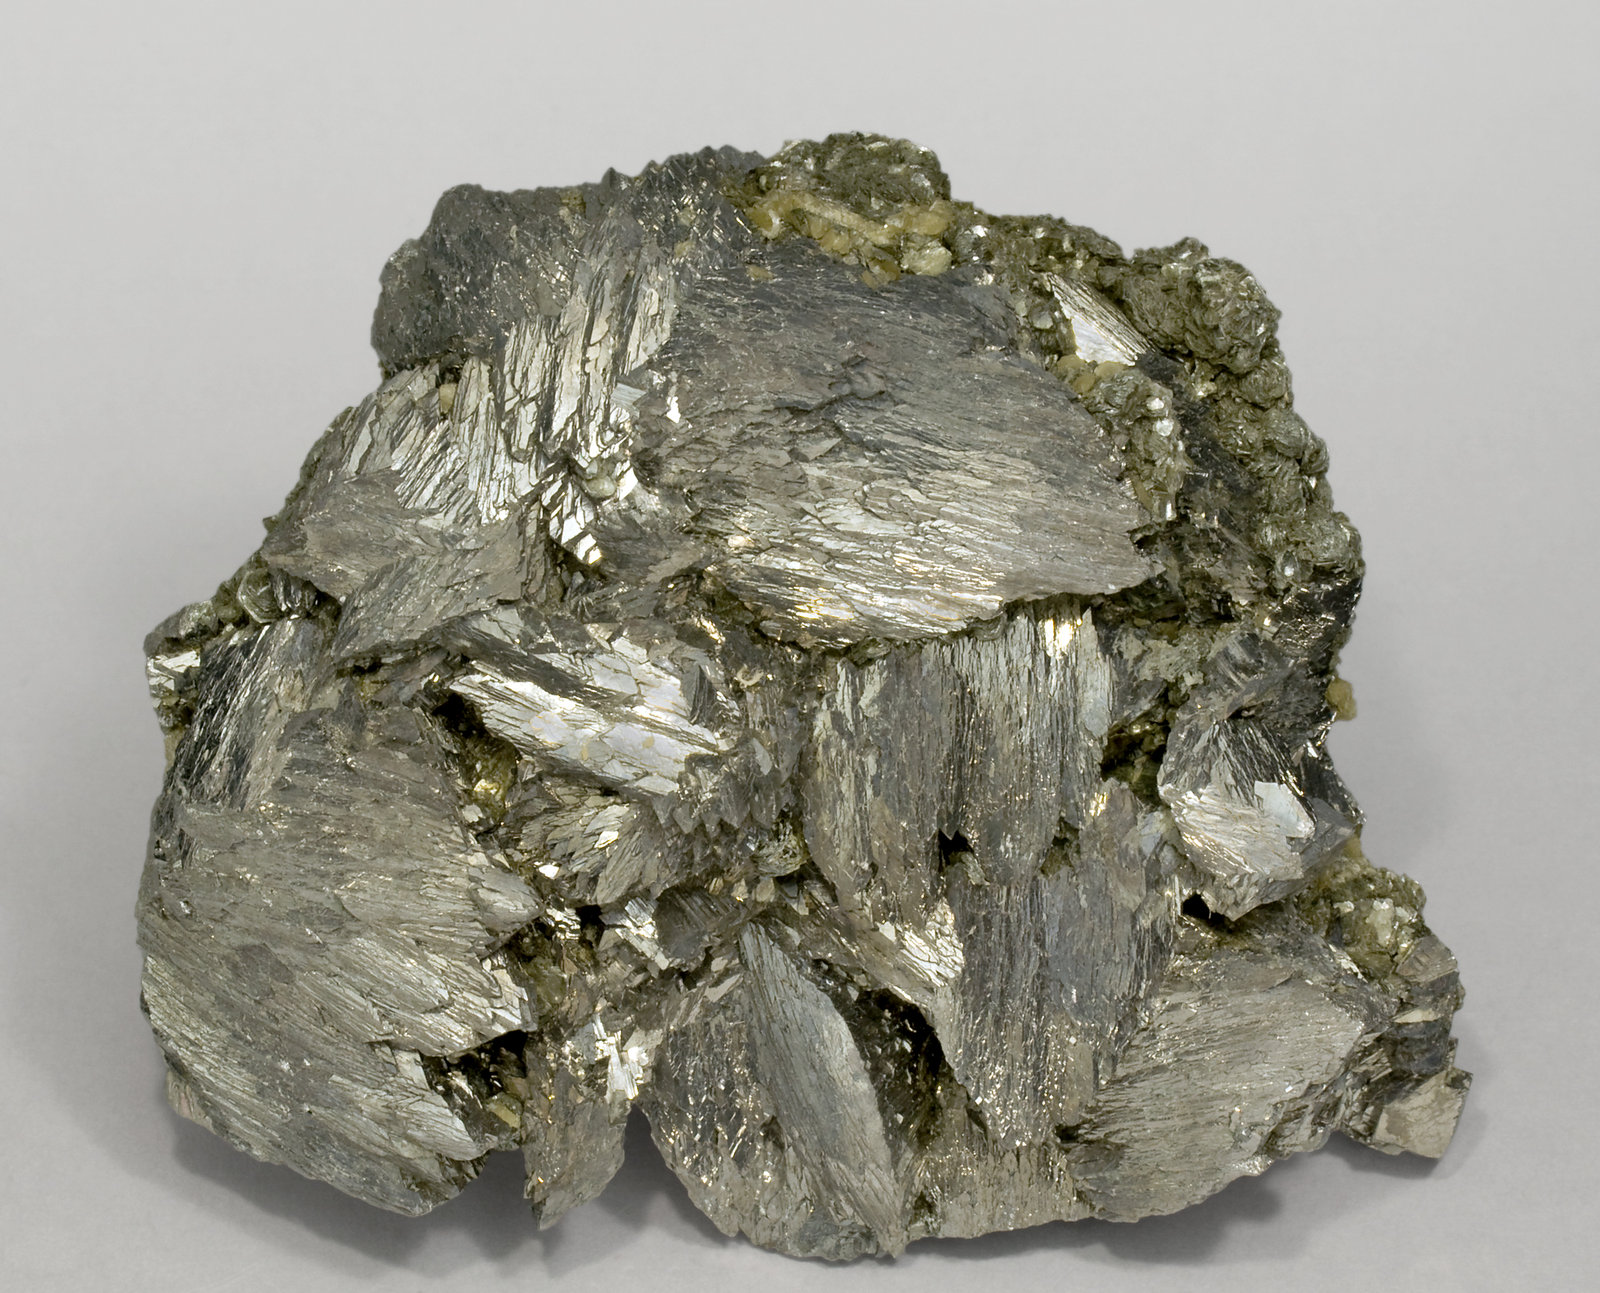 specimens/s_imagesV1/Arsenopyrite-RZ46V1f.jpg